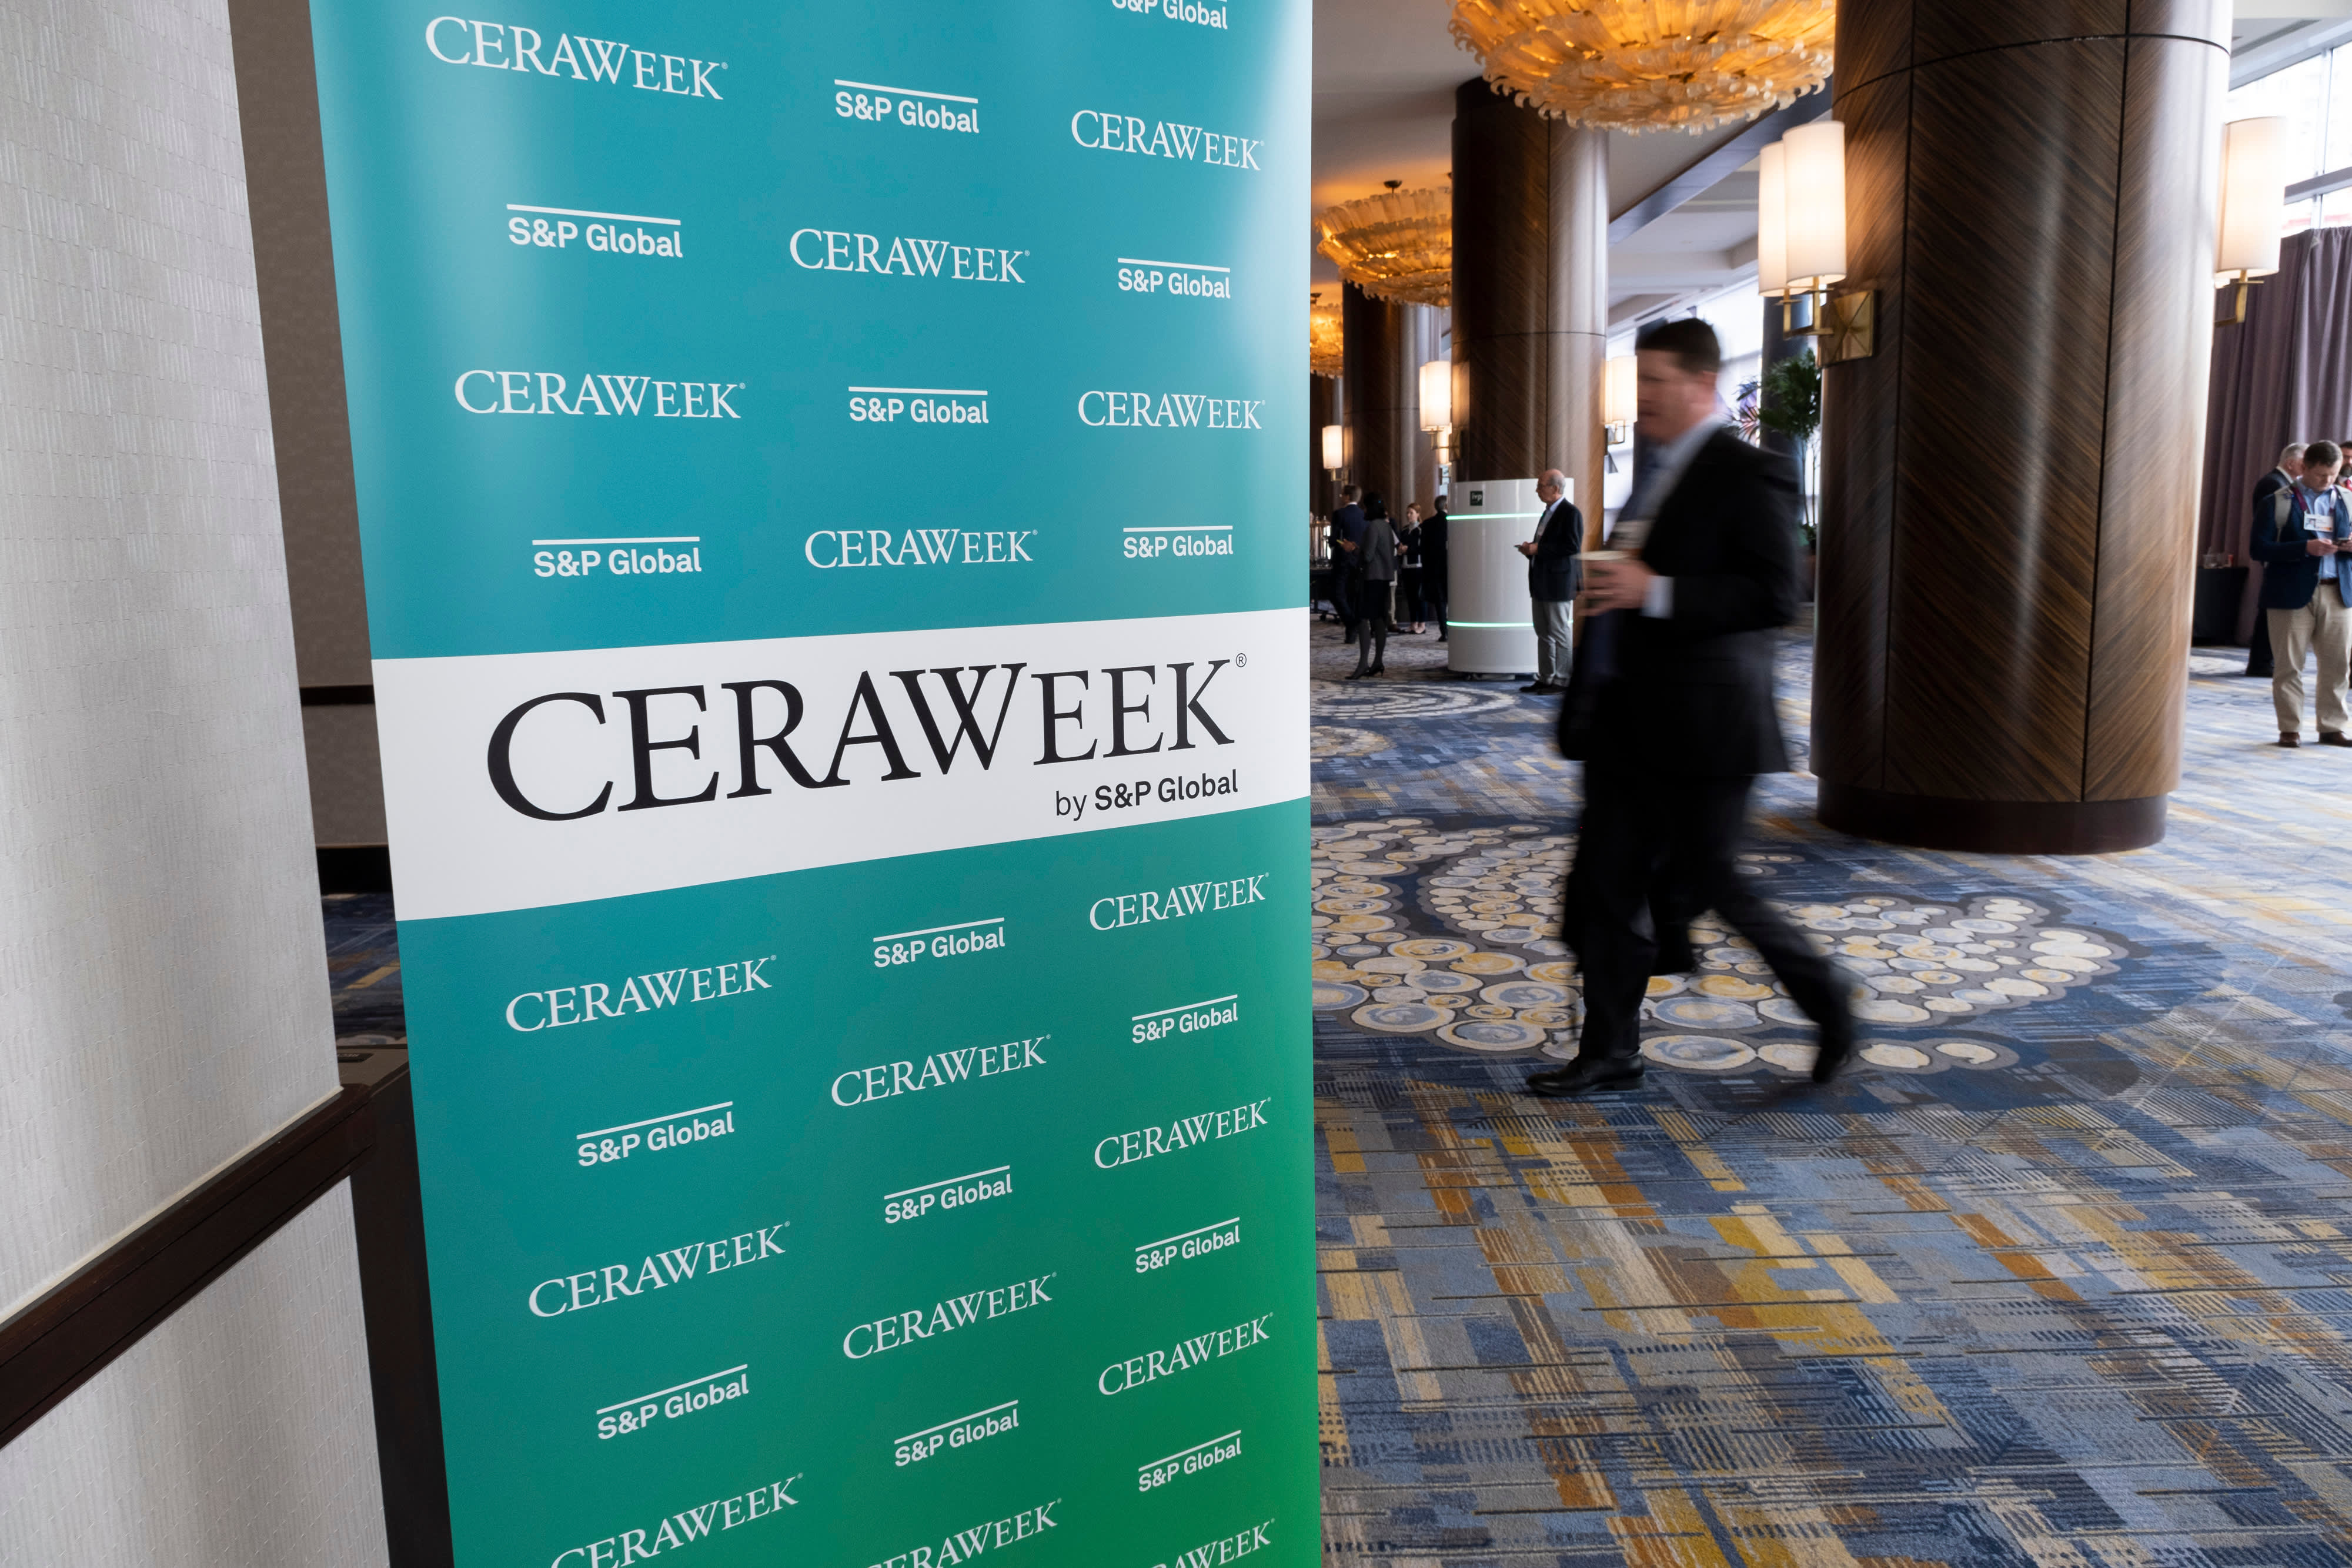 Insiders debate how to secure America’s energy future at CERAWeek